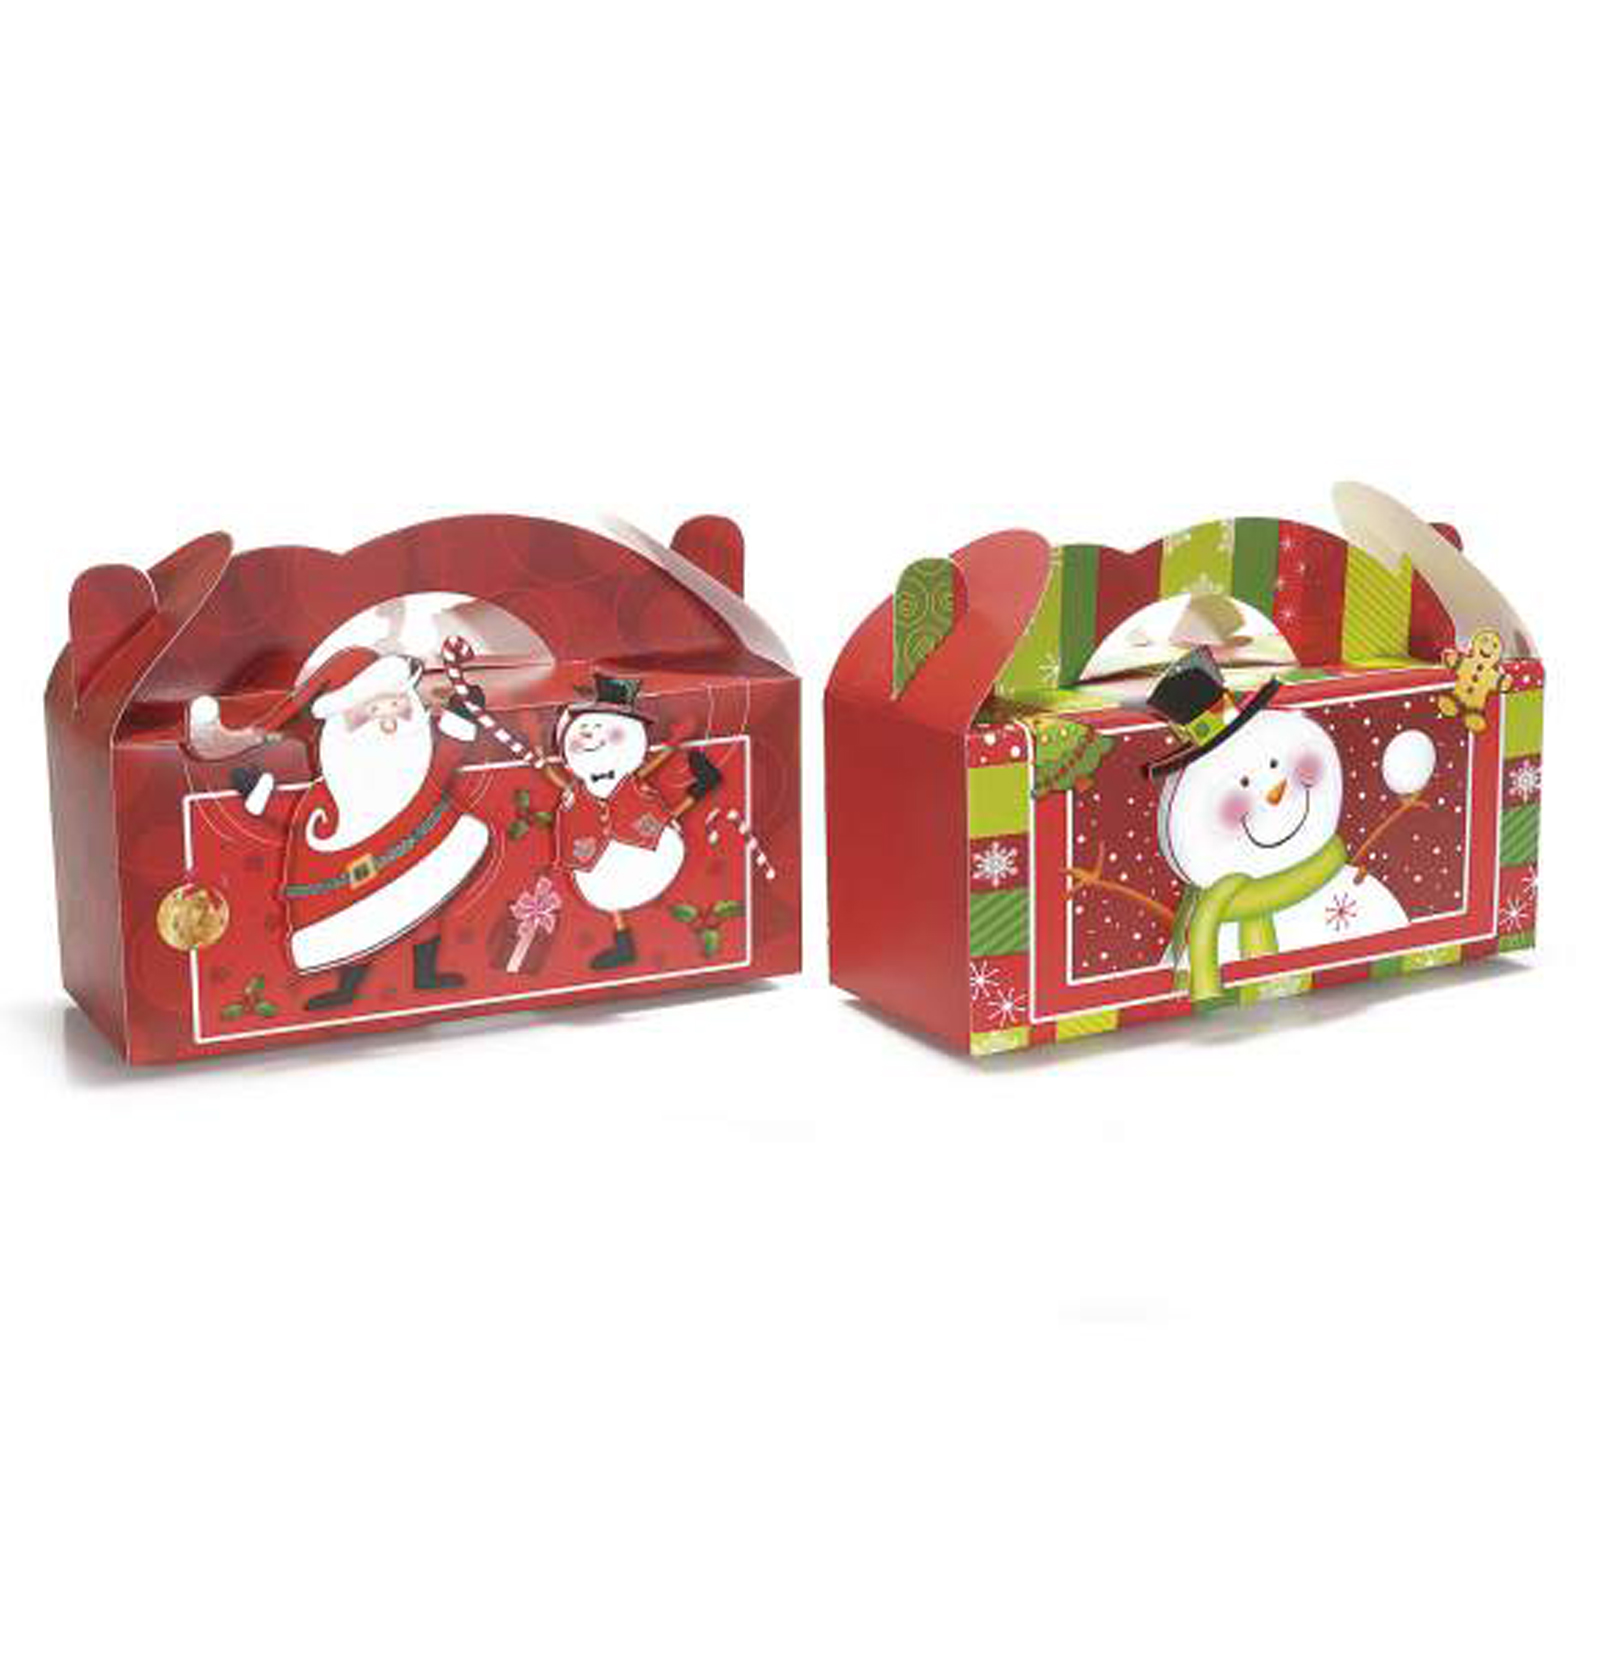 16Pz. Scatola per pacco regalo natalizia in carta colorata con personaggi natalizi 3D cm 25x10x11 H